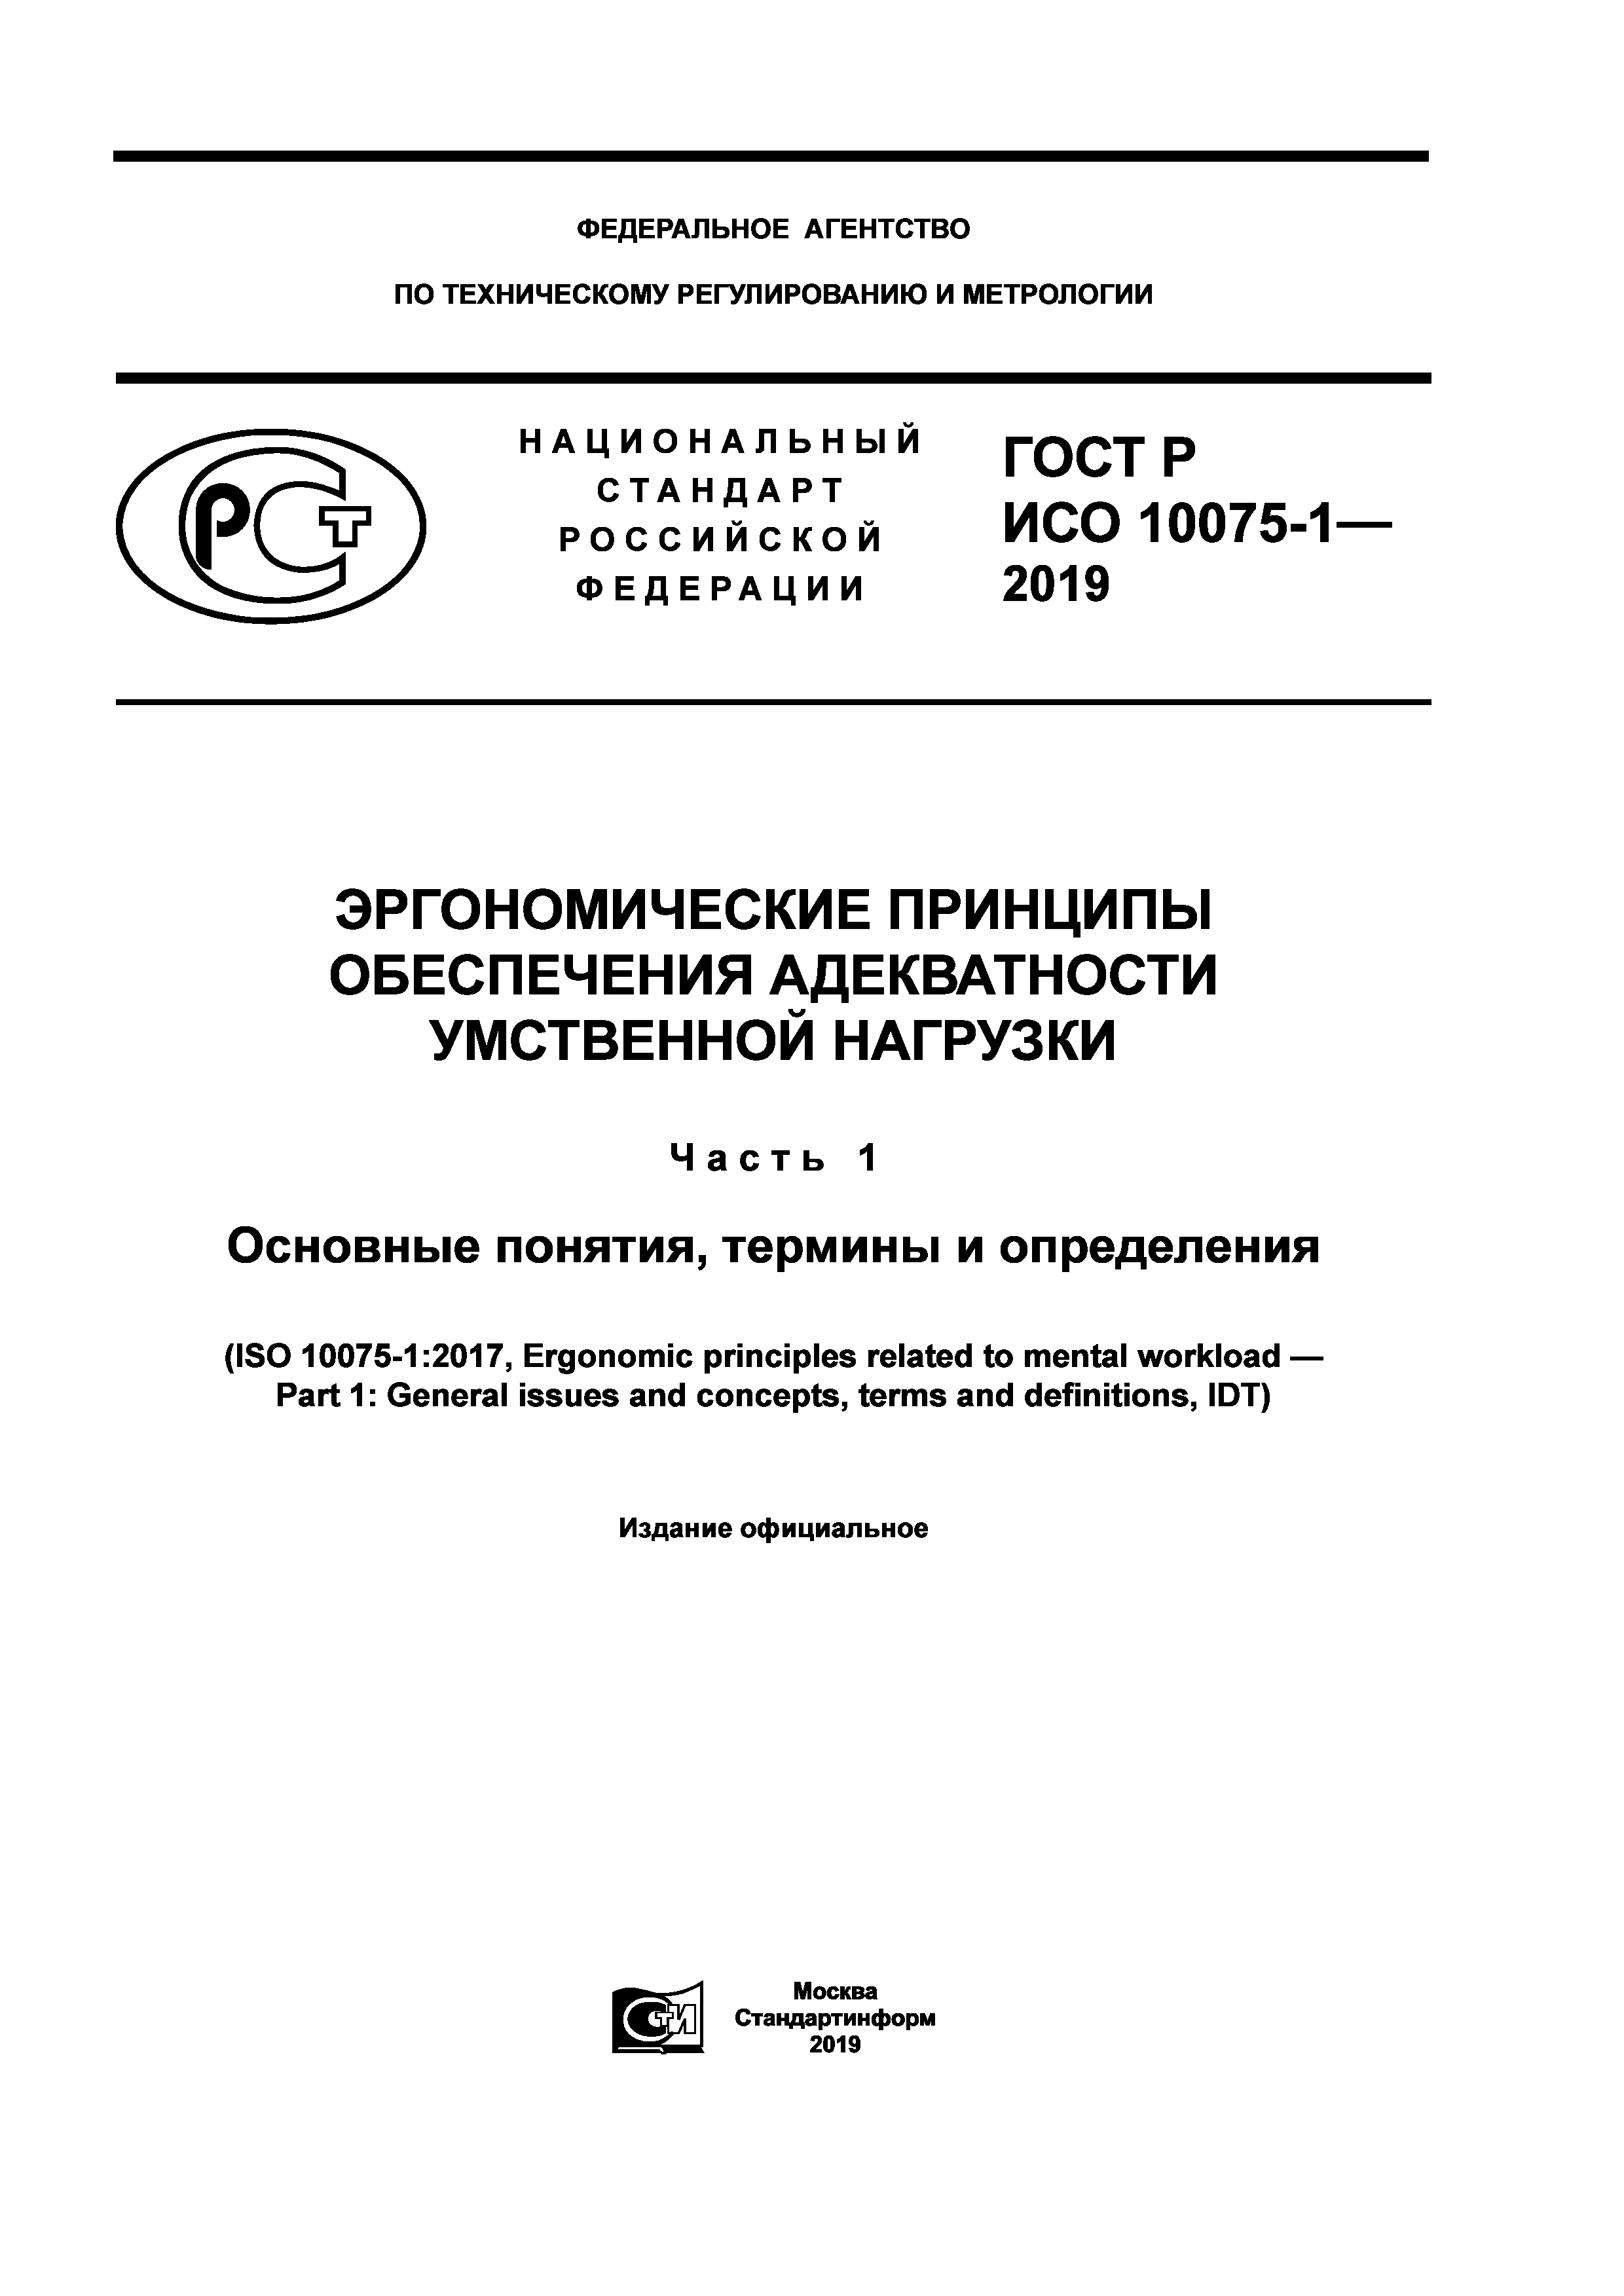 ГОСТ Р ИСО 10075-1-2019